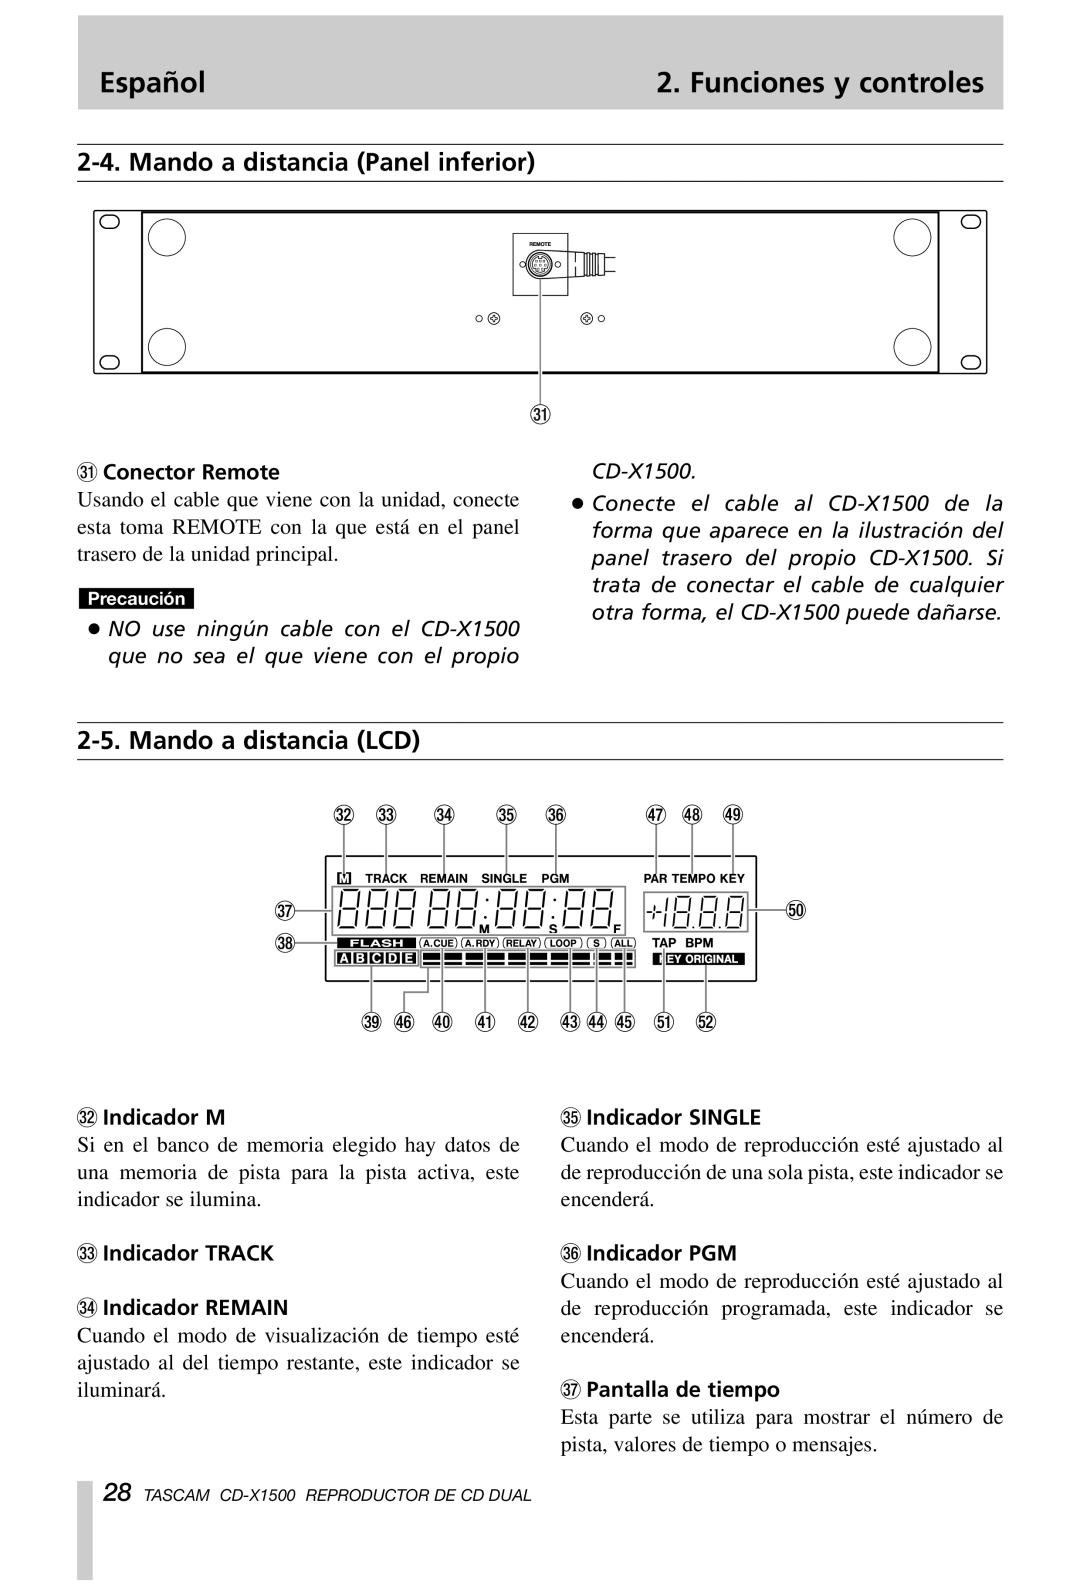 Tascam CD-X1500 Mando a distancia Panel inferior, Mando a distancia LCD, Español, Funciones y controles, z Conector Remote 